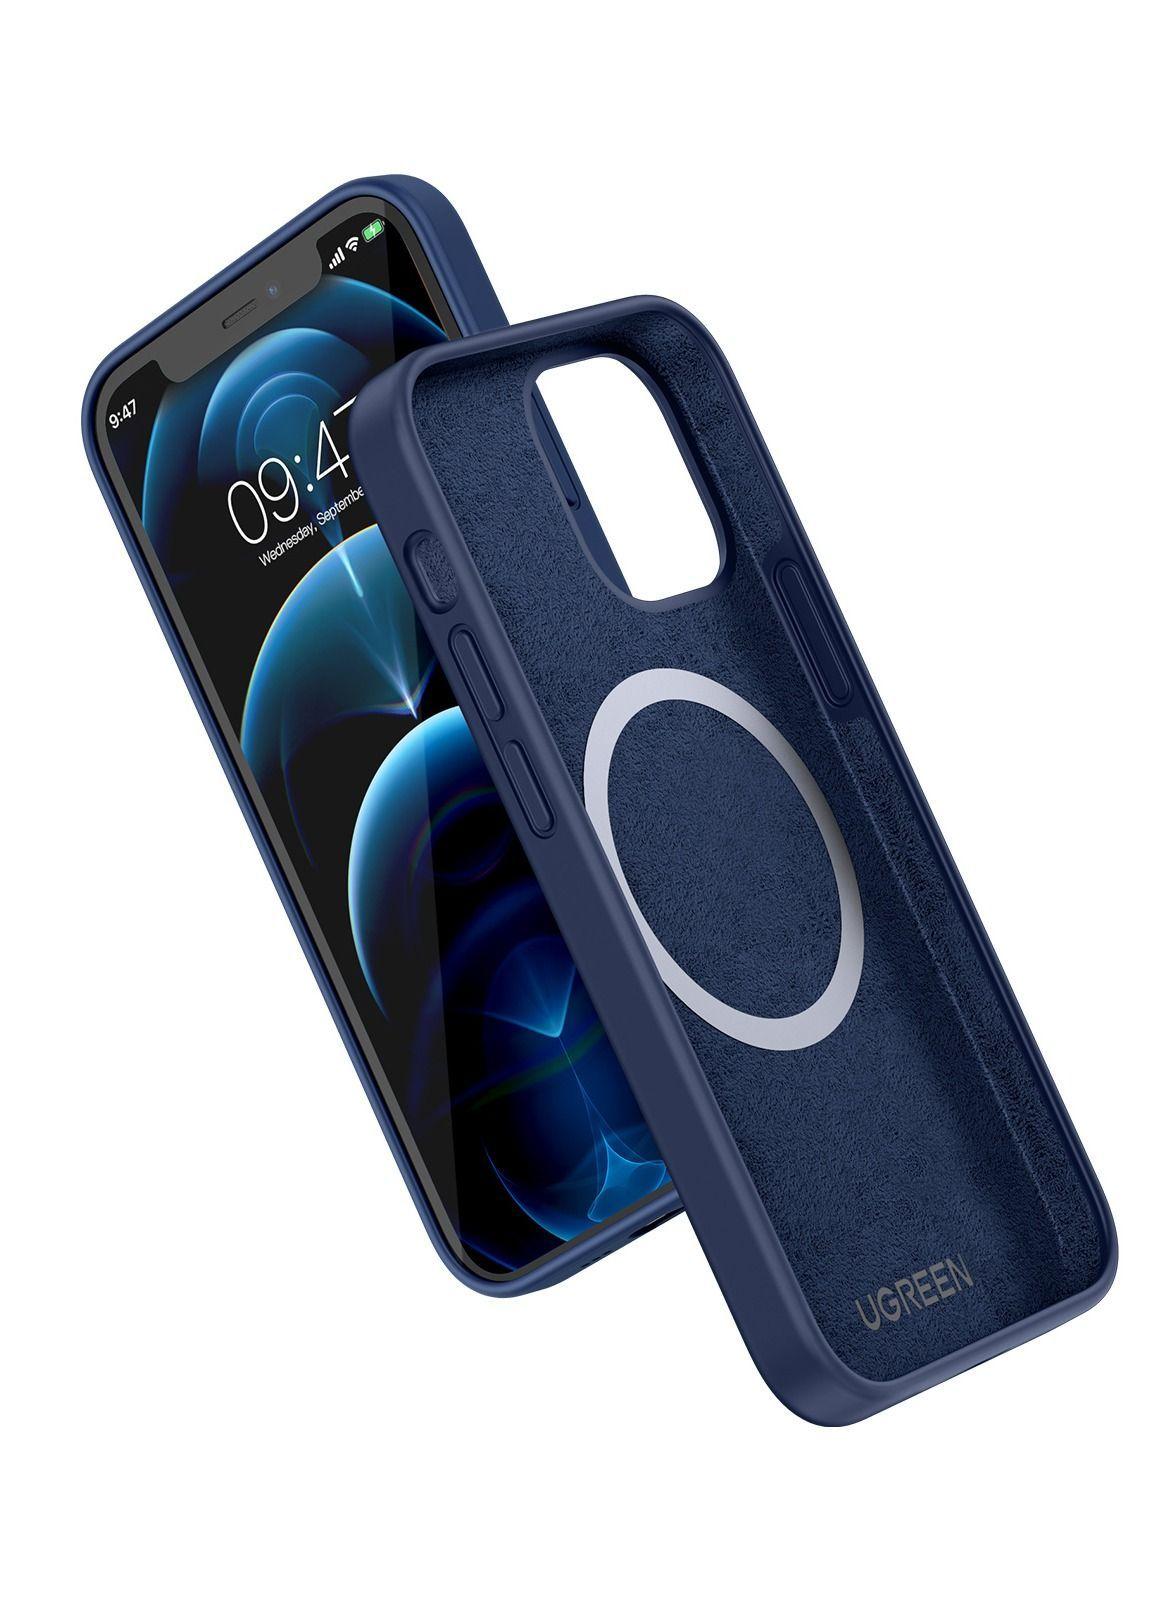 كفر موبايل ايفون ( 6.7" ) يدعم Magsafe - ازرق UGREEN -  Silicone Phone Case For iPhone 12 Pro Max